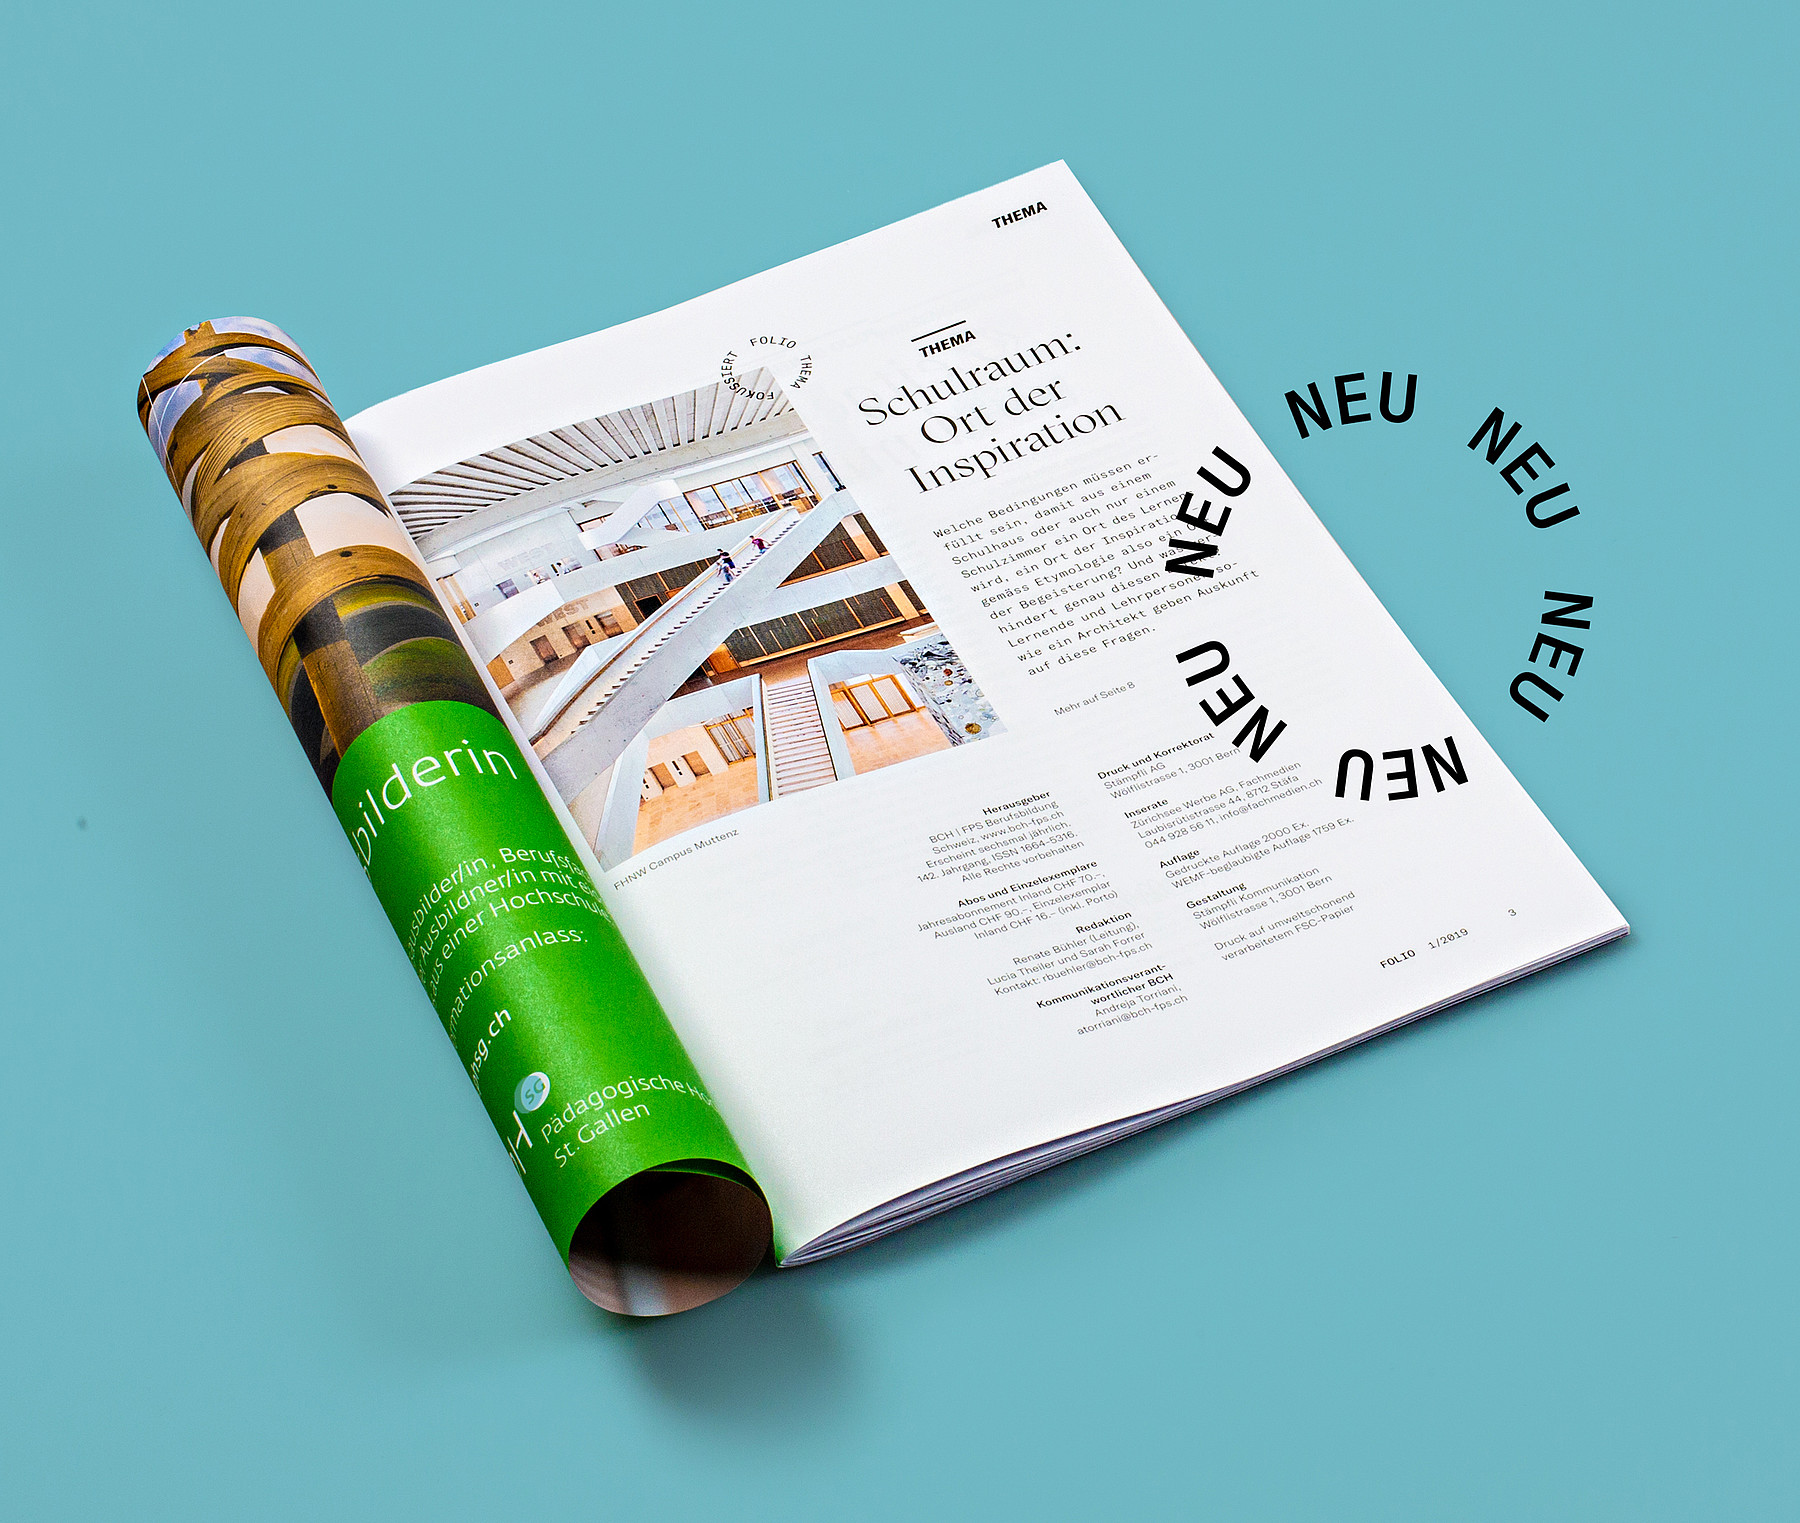 Ein Blick in das neu gestaltete Magazin «Folio» des Verbands Berufsbildung Schweiz zeigt einen Artikel zum Thema «Schulraum: Ort der Inspiration»